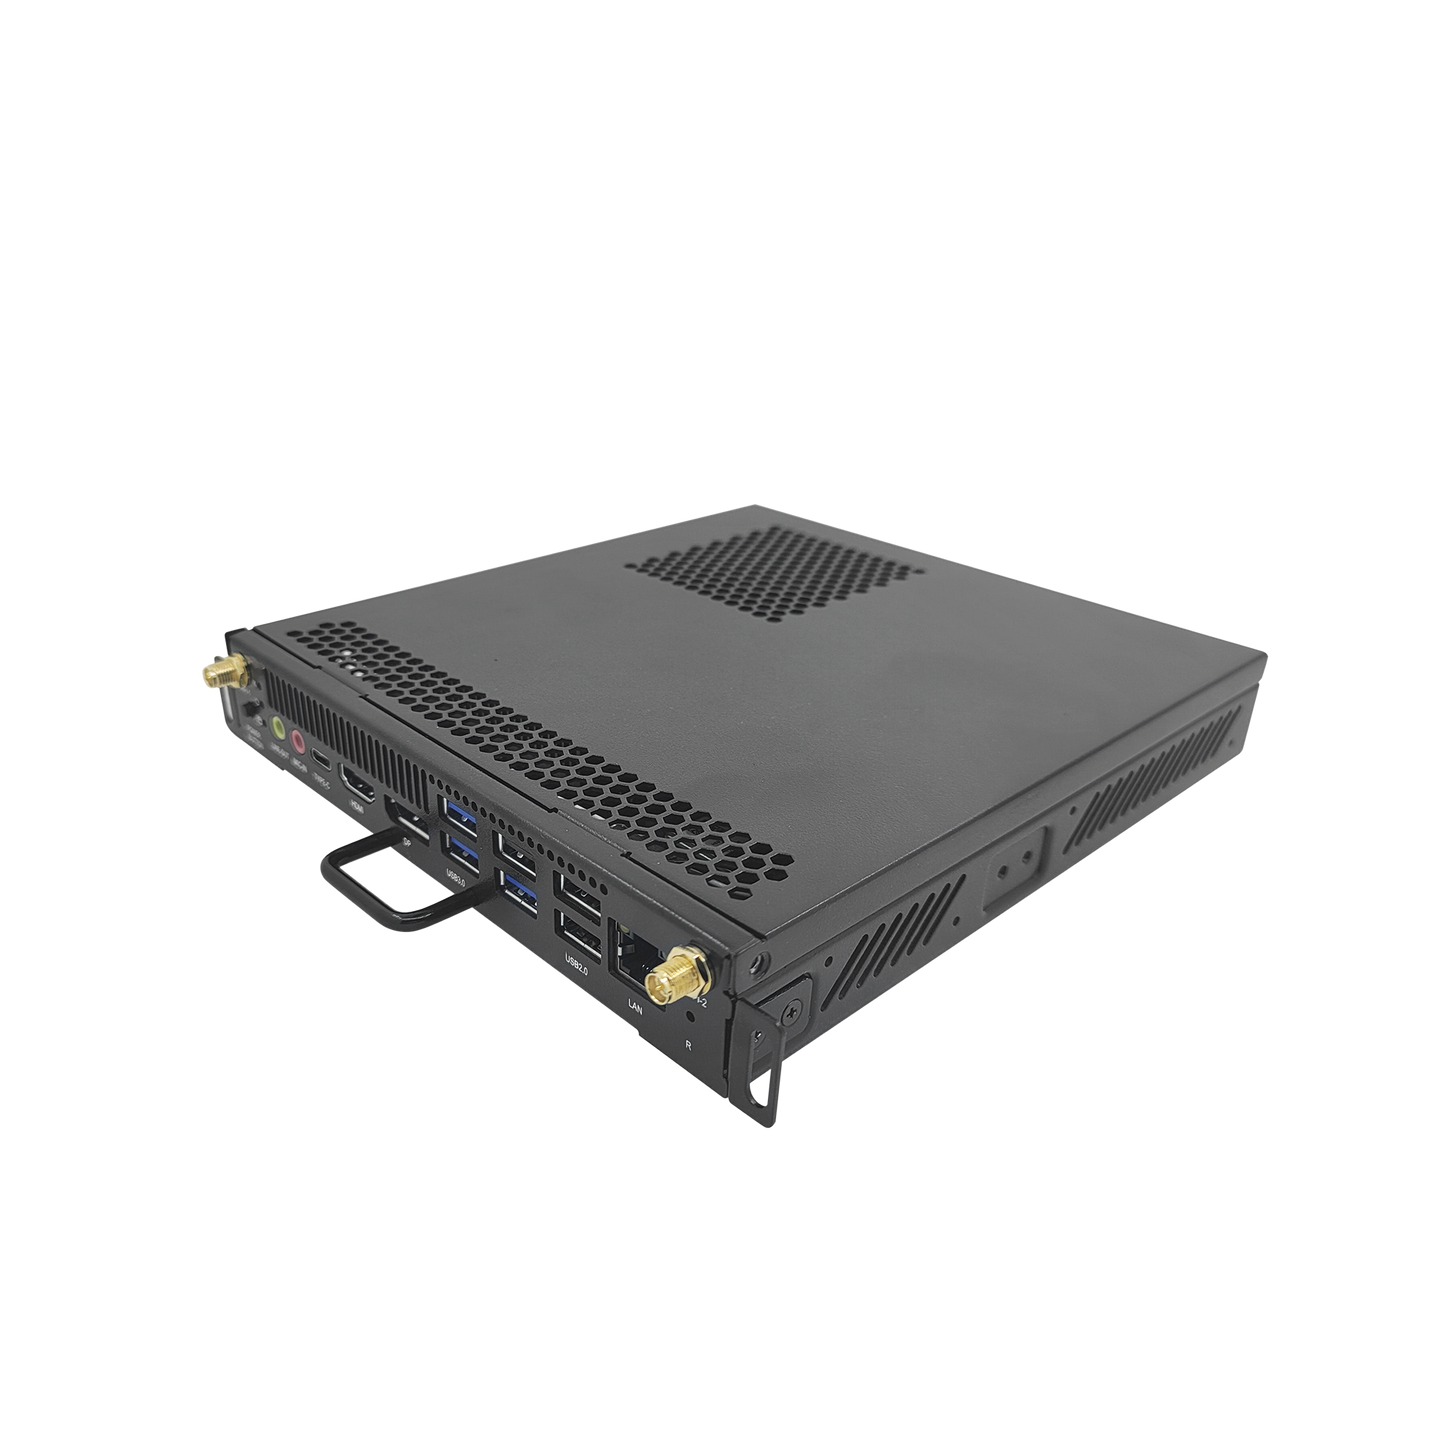 OPS Modular Compatible con DS-D5CXXRB/B / Core i5 9400H / 8 GB RAM / SSD de 256 GB / Bluetooth 4.0 / Salida HDMI y DP / 1 Puerto RJ45 / Soporta H.265 y Resolución 4K